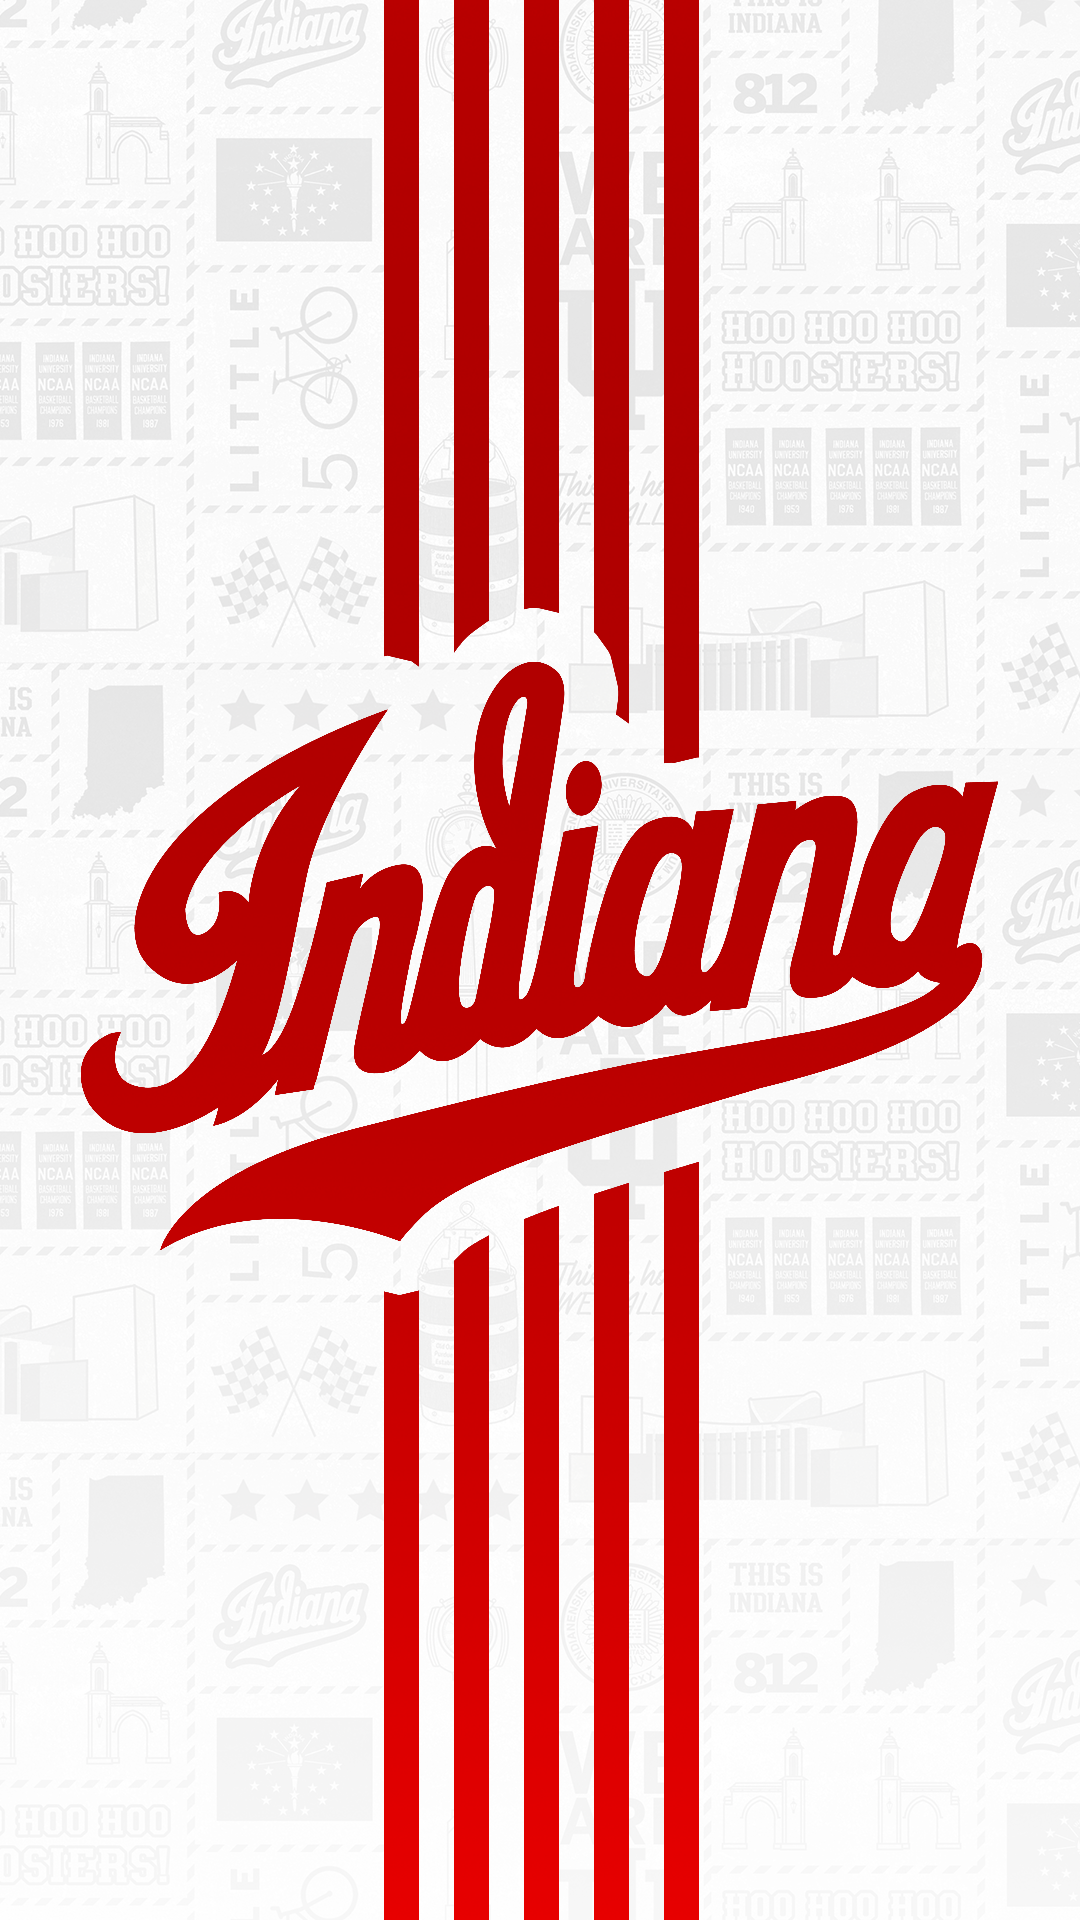 Indiana University Basketball Logo - Phone Wallpapers - Indiana University Athletics